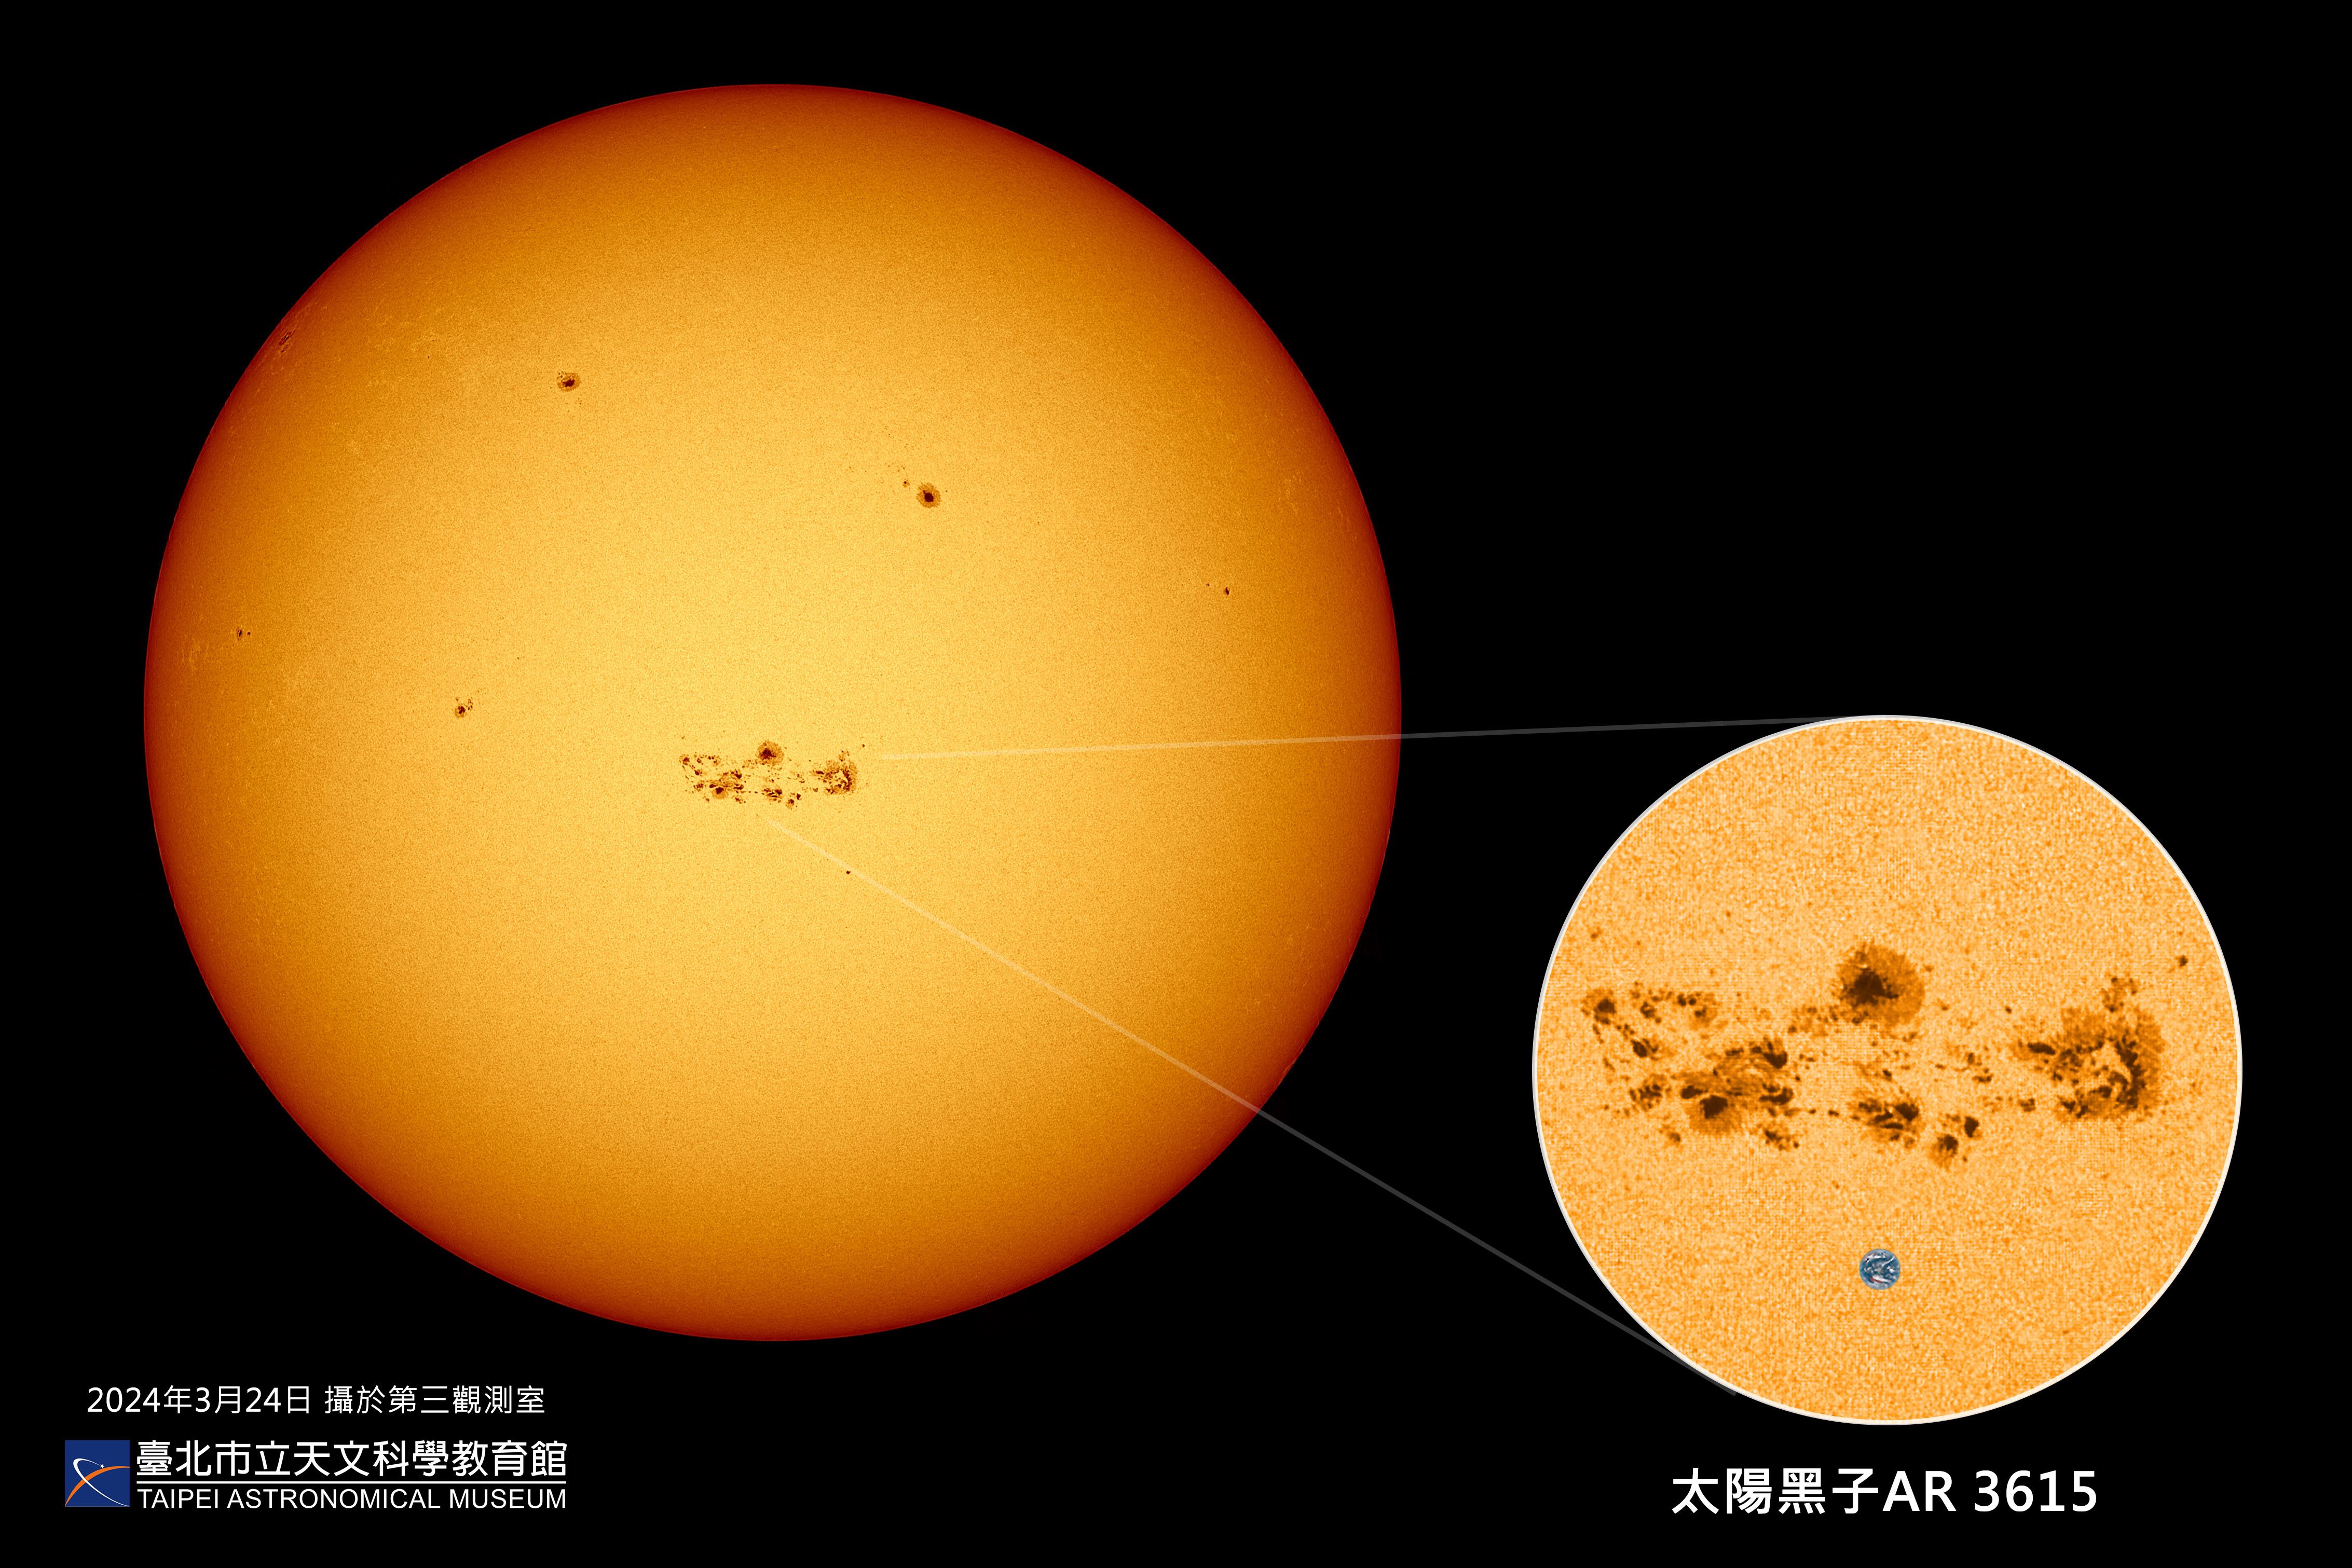 太陽活動極大期提前報到   太陽黑子  極光  磁暴異常活躍...